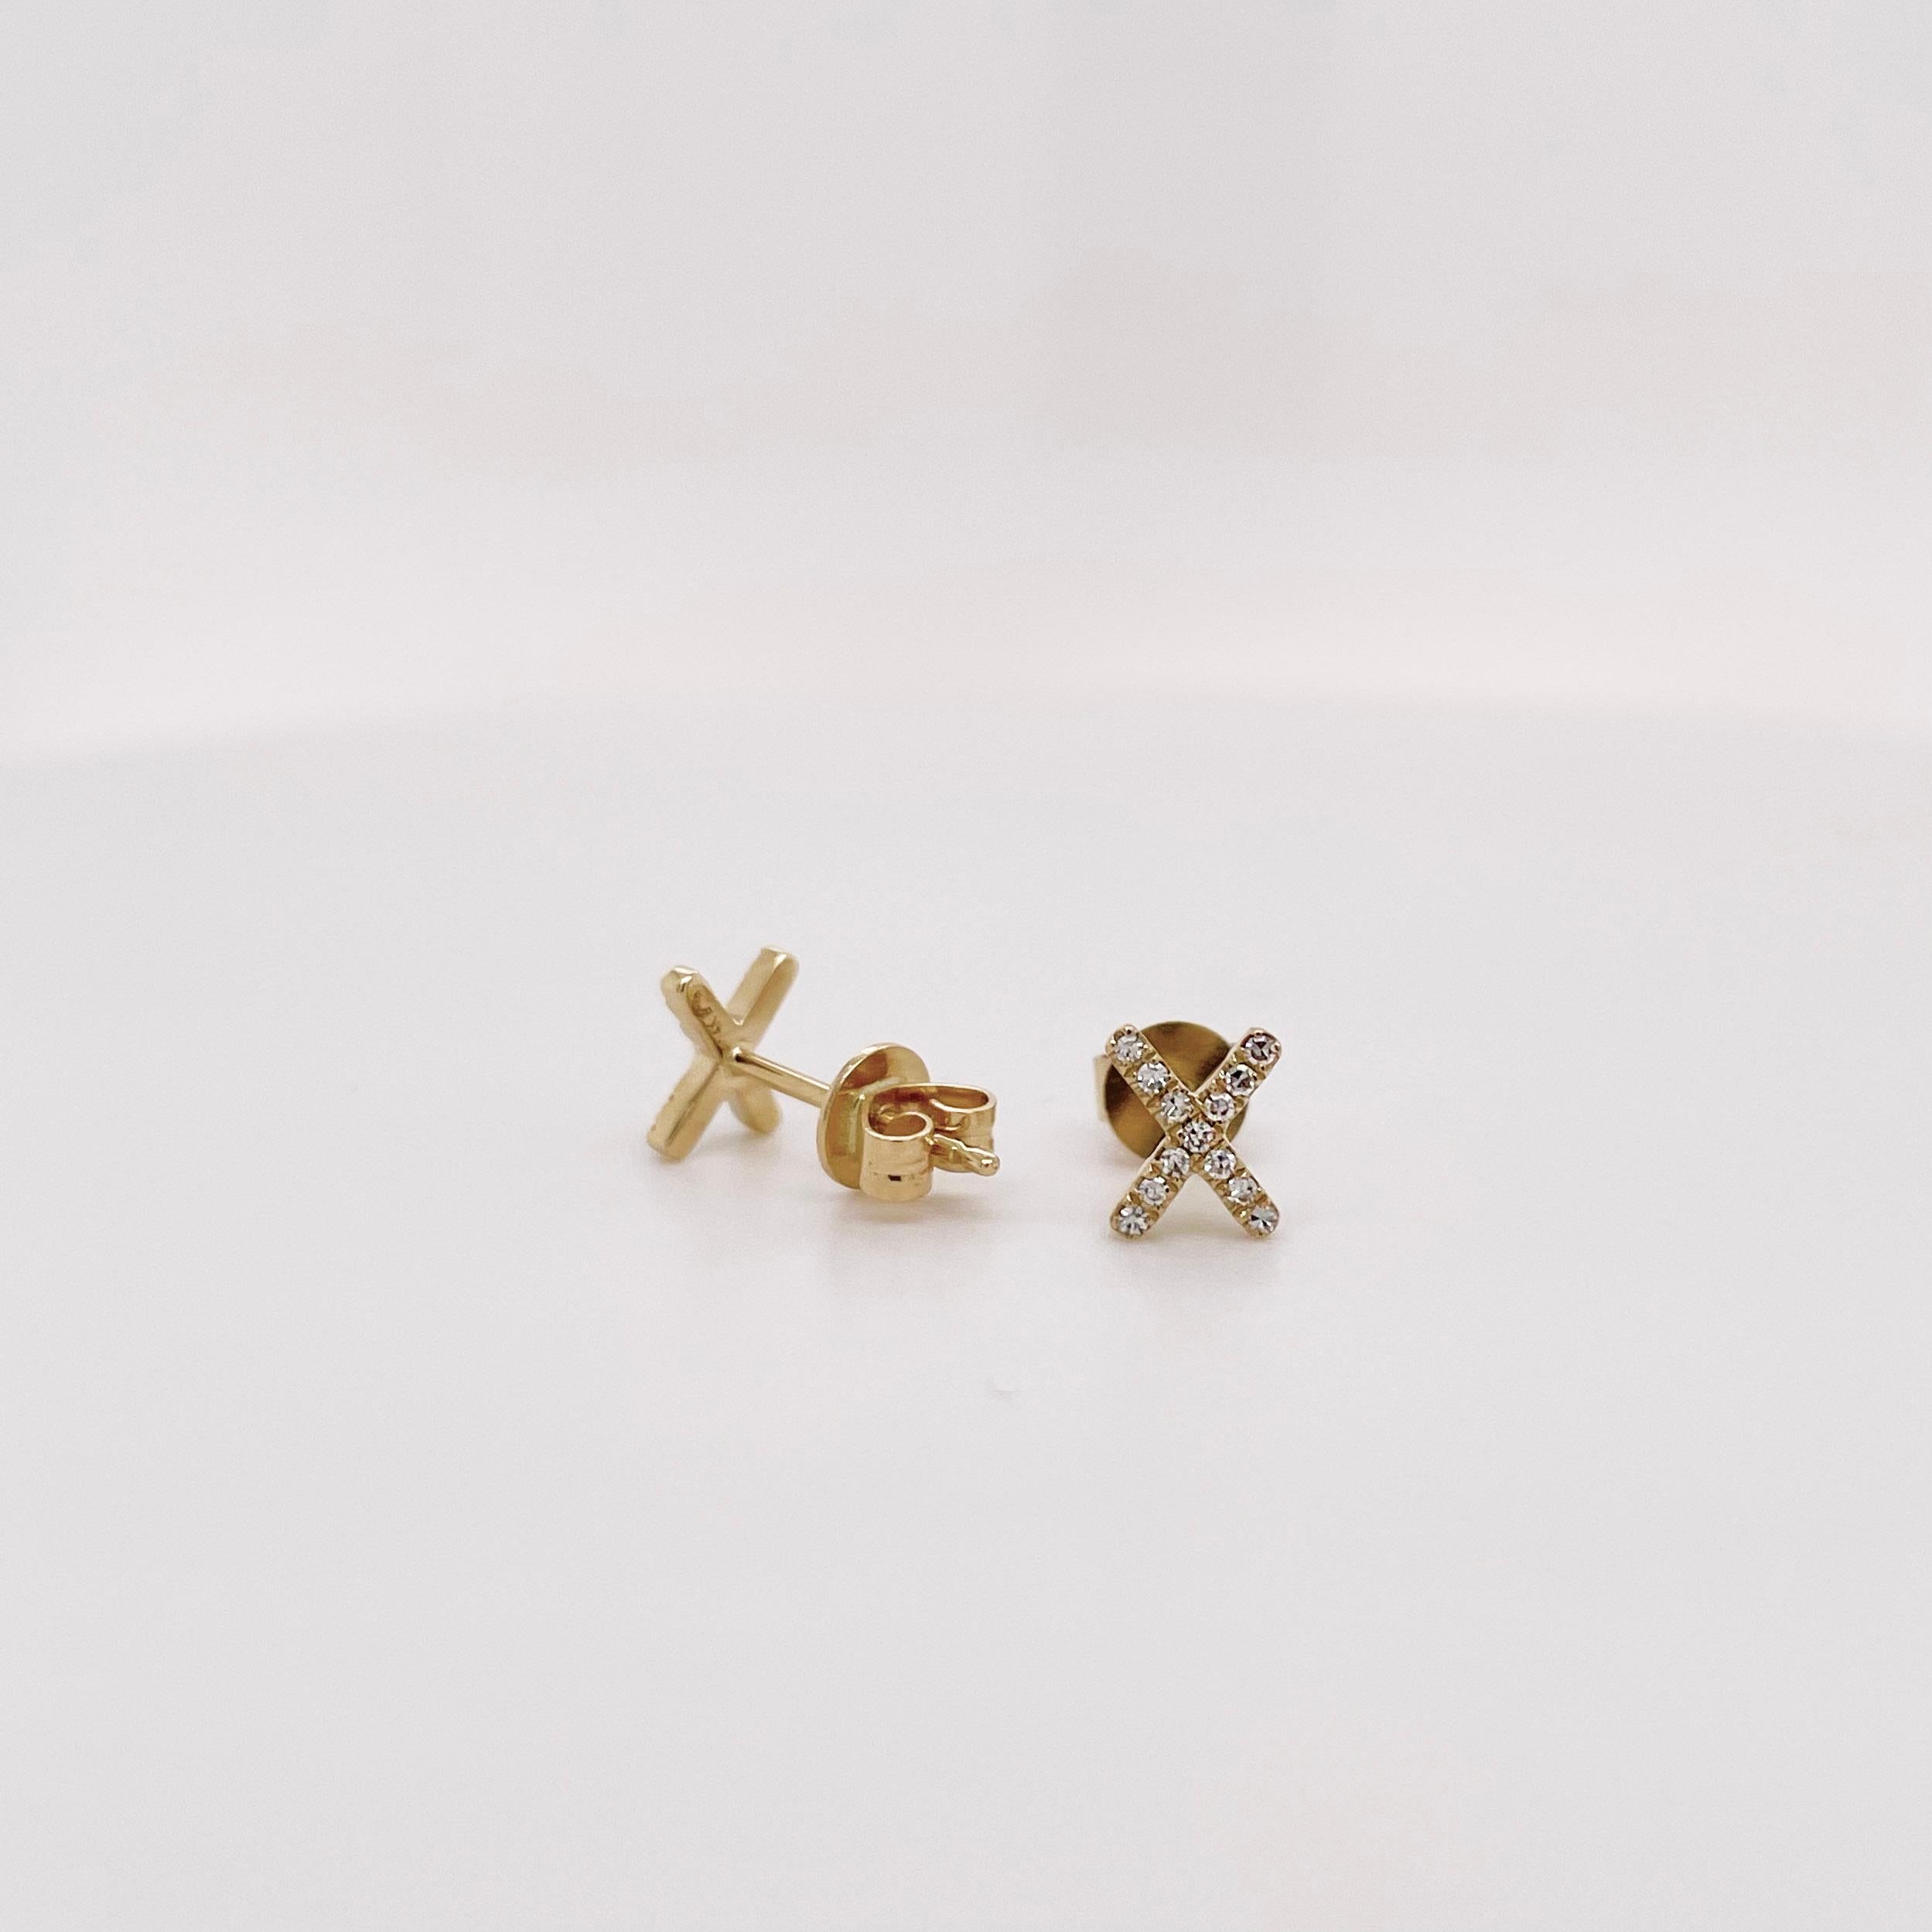 Wunderschöne Diamanten-Ohrstecker sind die perfekte Ergänzung für jede Schmucksammlung! Dieses Pflasterdiamanten-Design ist einzigartig und trendy. Tragen Sie diese Ohrstecker als Ihr Markenzeichen oder kombinieren Sie sie mit anderen Ohrringen zu